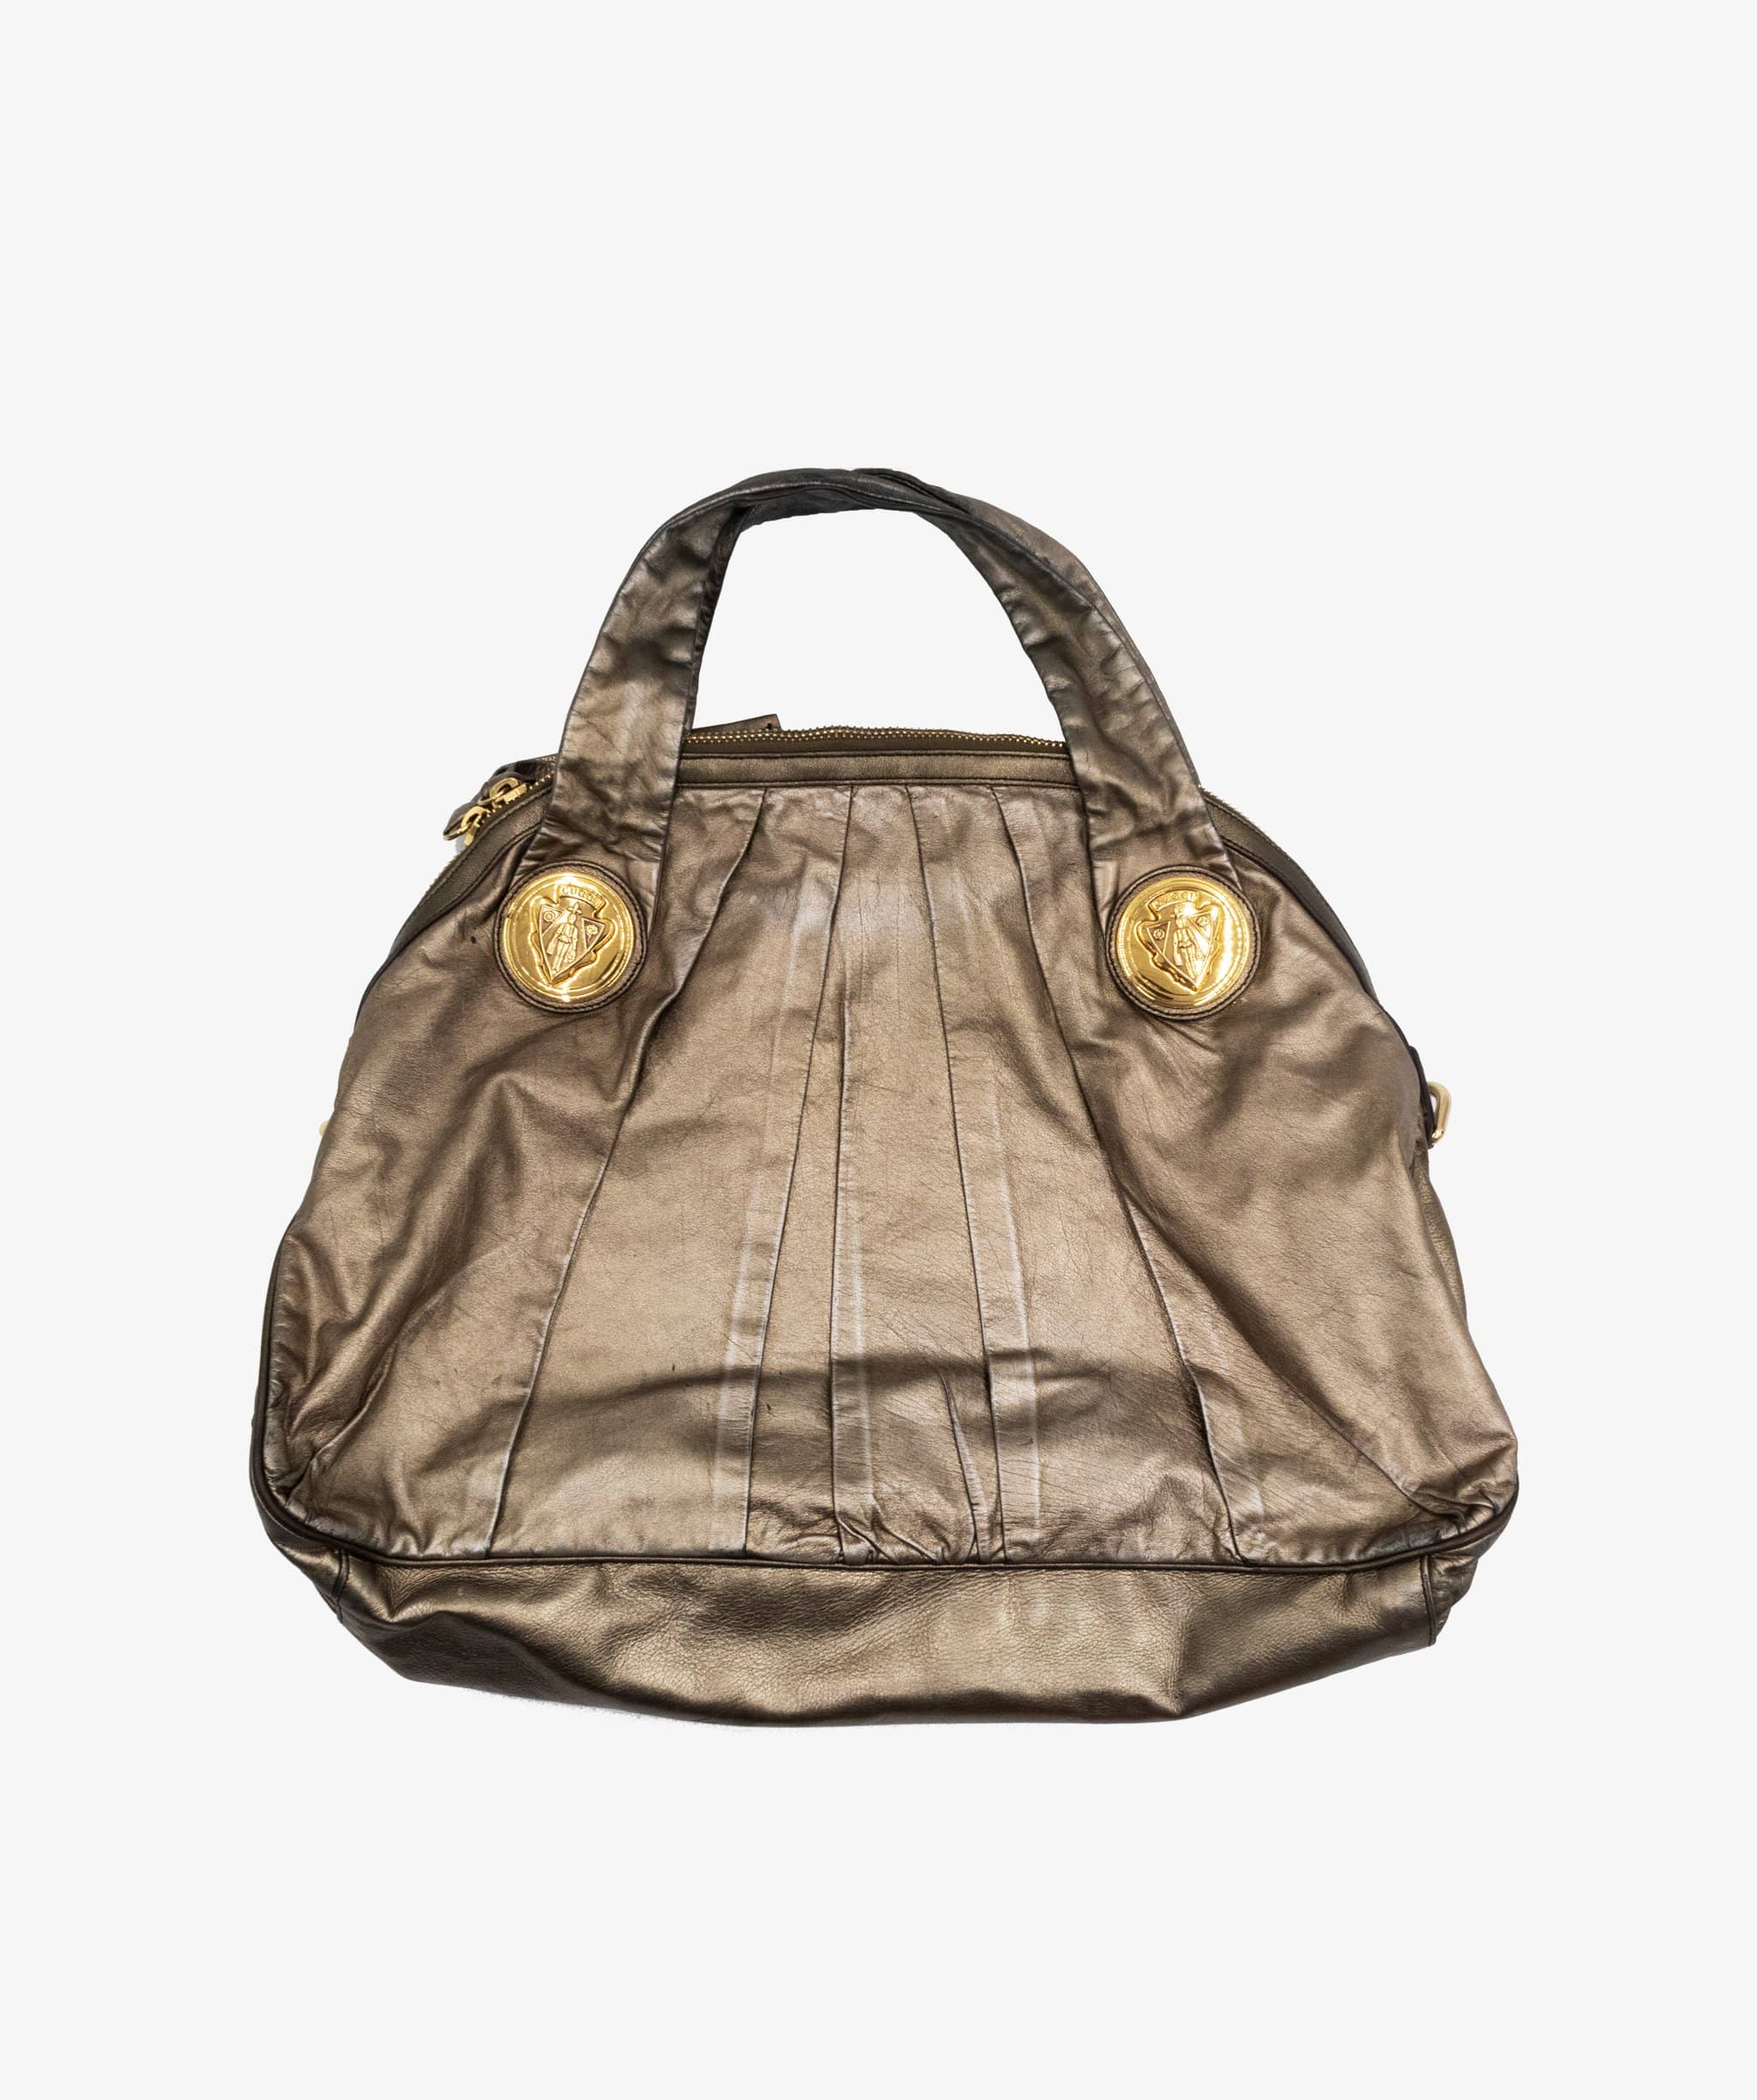 Gucci Hysteria Handbag – LuxuryPromise